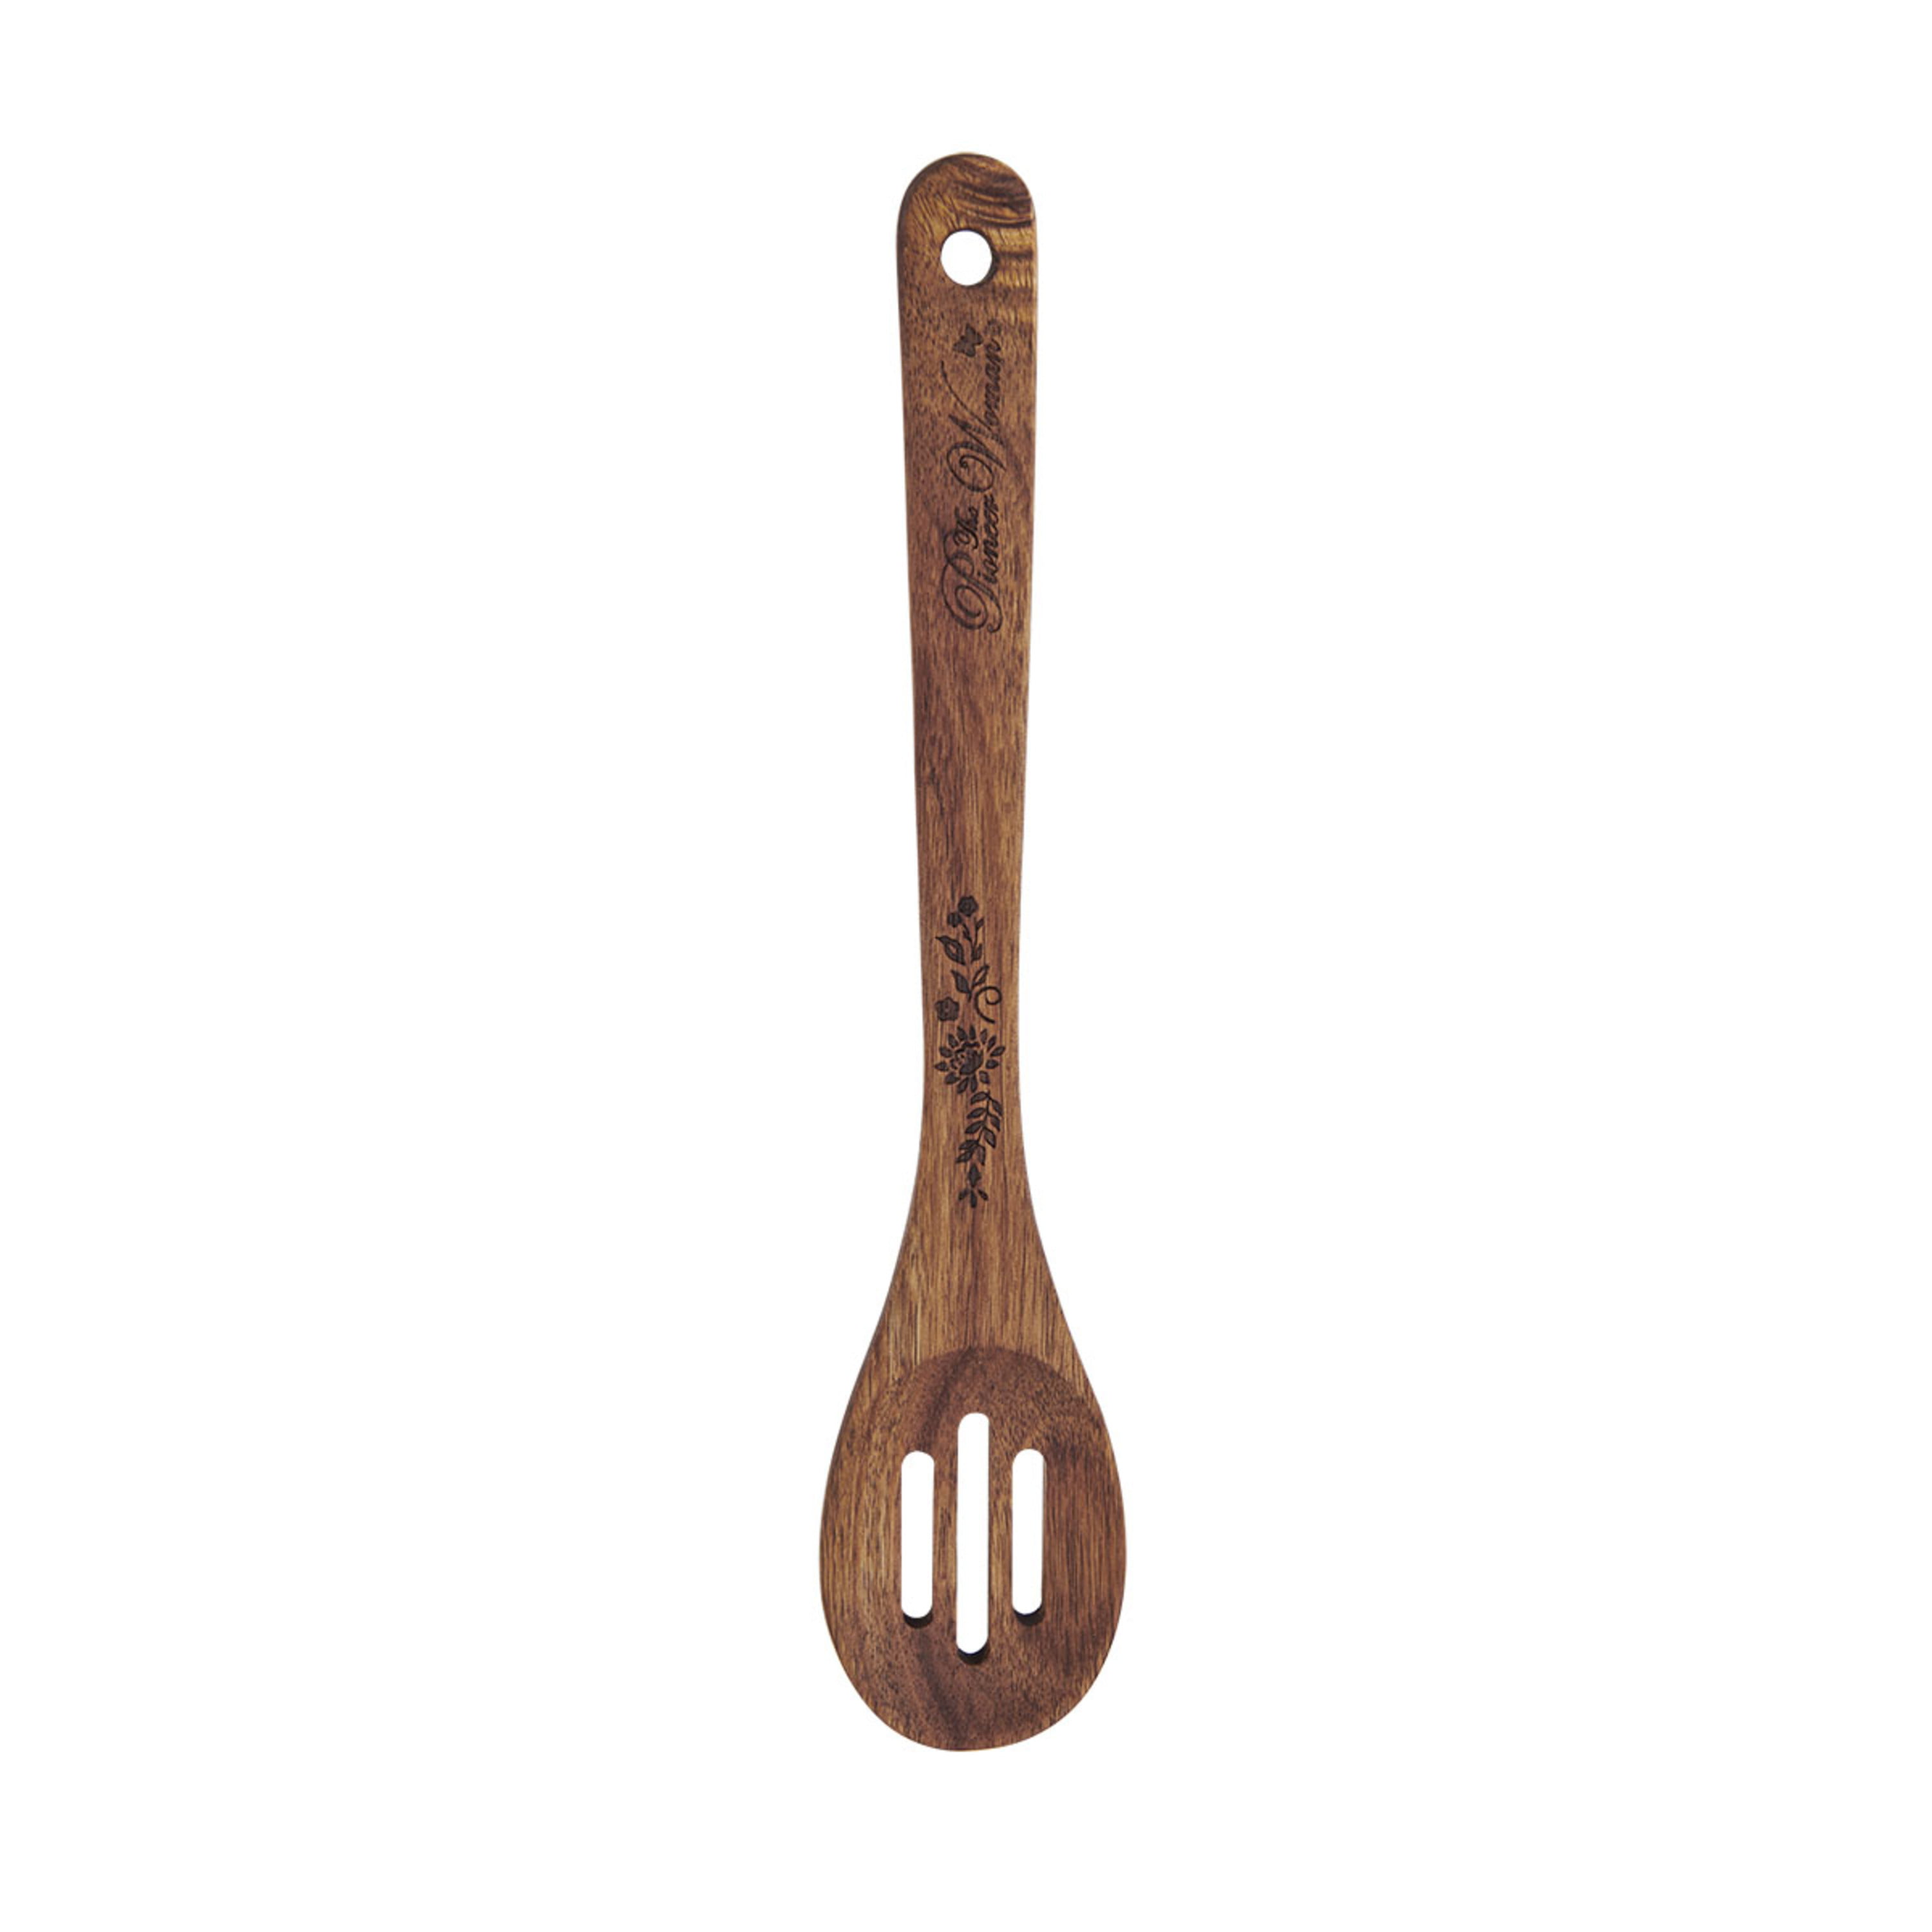 Wooden Kitchen Utensils Set - Wood Cooking Spoons - Wooden Utensils -  Avocrafts